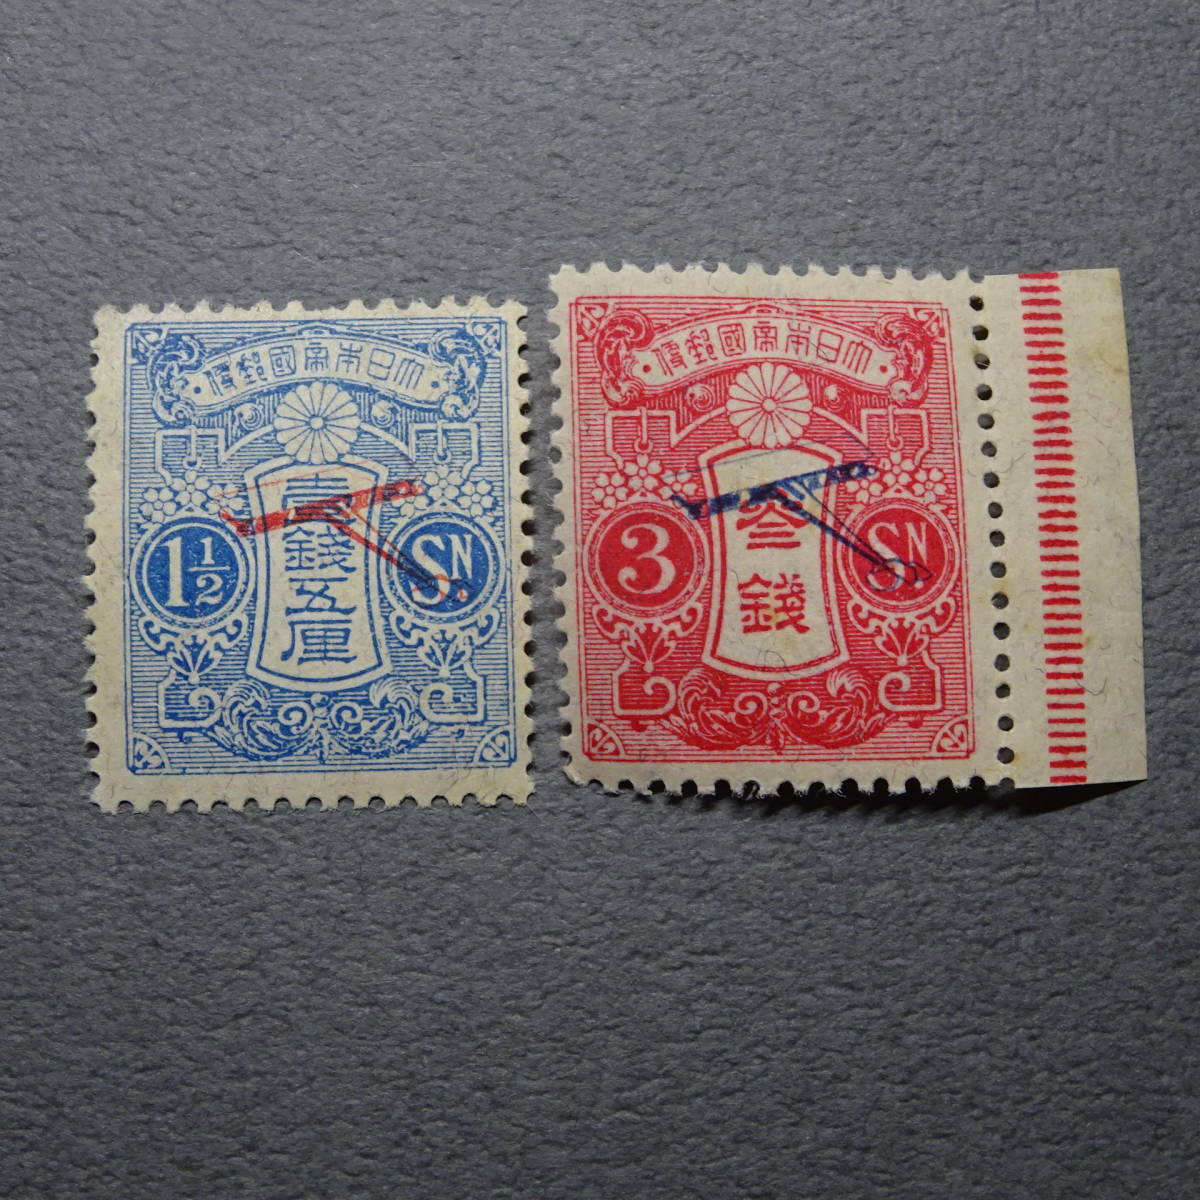 日本切手 1919年 飛行郵便試験記念3銭切手 赤-